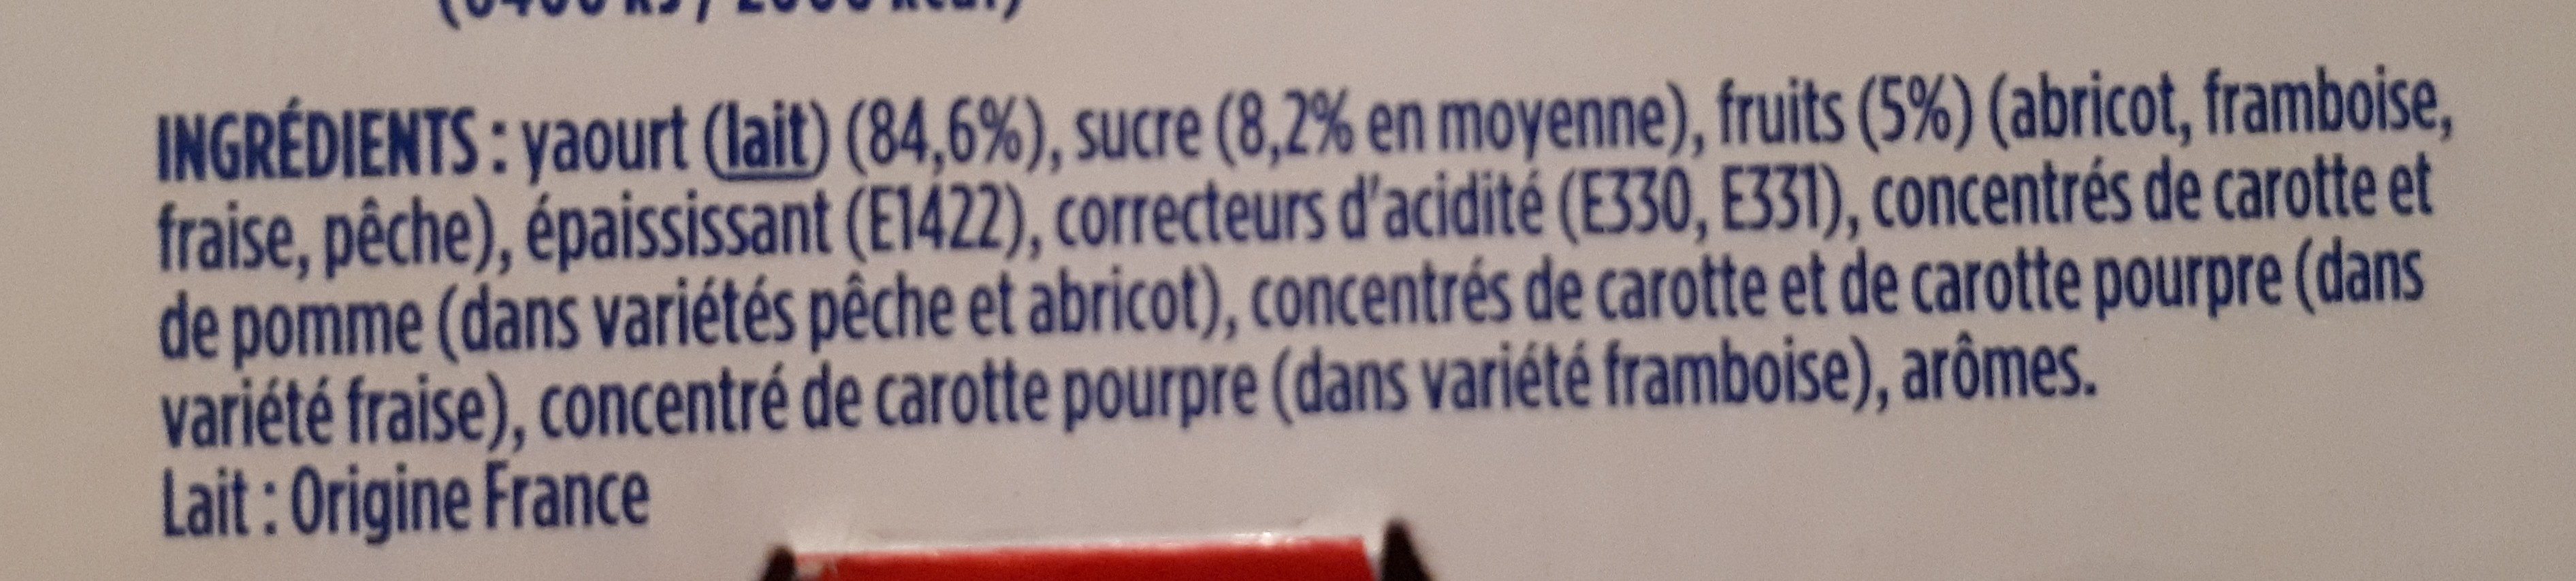 Velouté Fruix yaourt aux bons fruits mixés - Ingredienser - fr